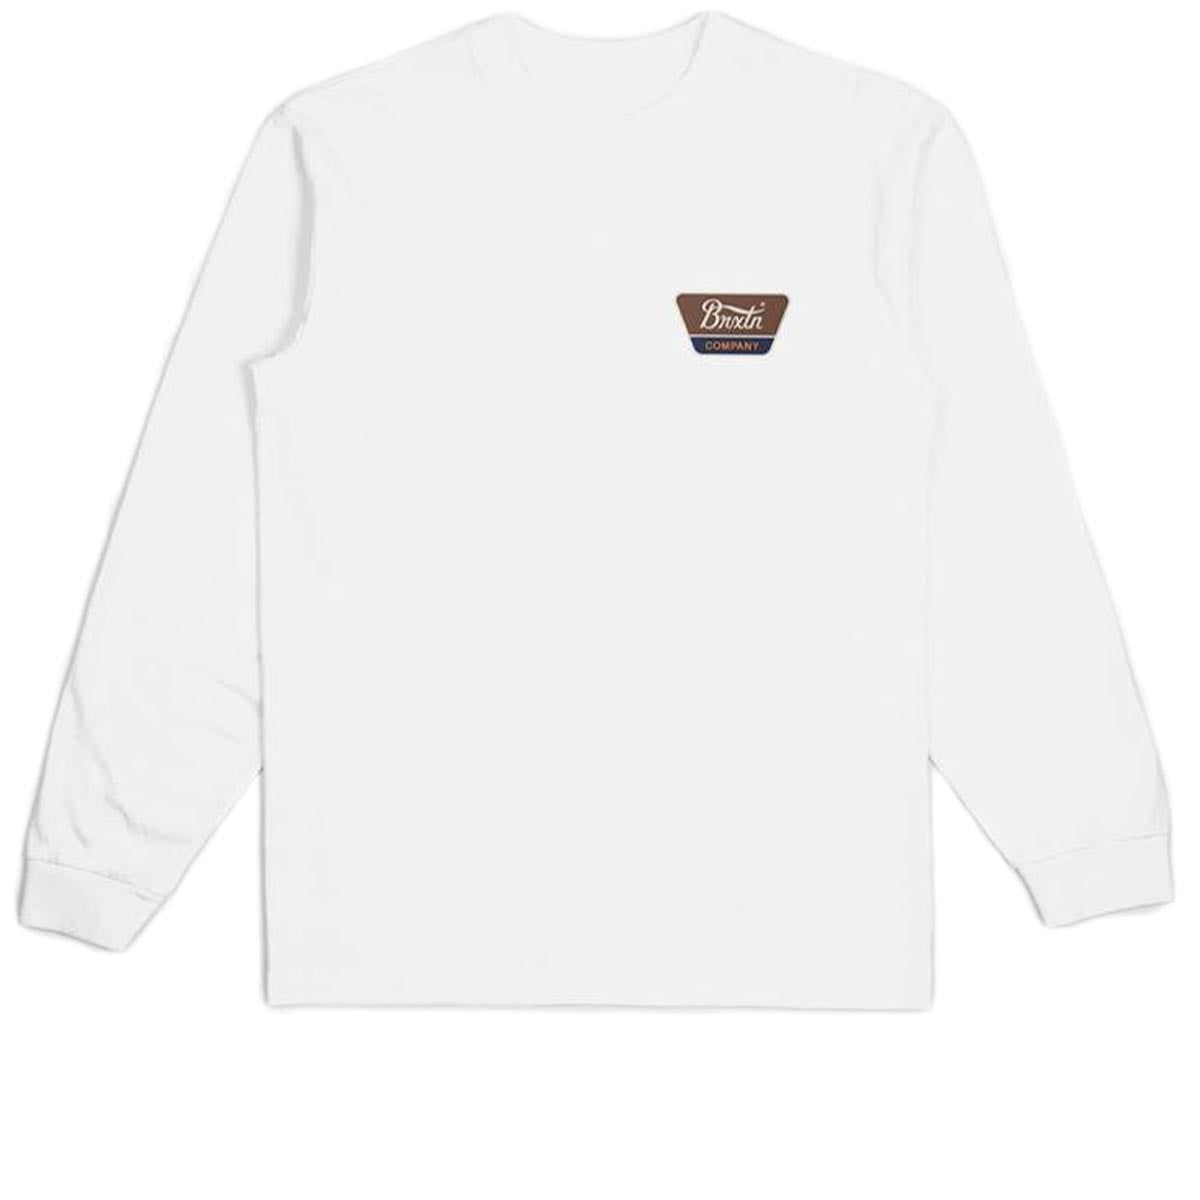 Brixton Linwood Long Sleeve T-Shirt - White/Sepia/Beige image 1